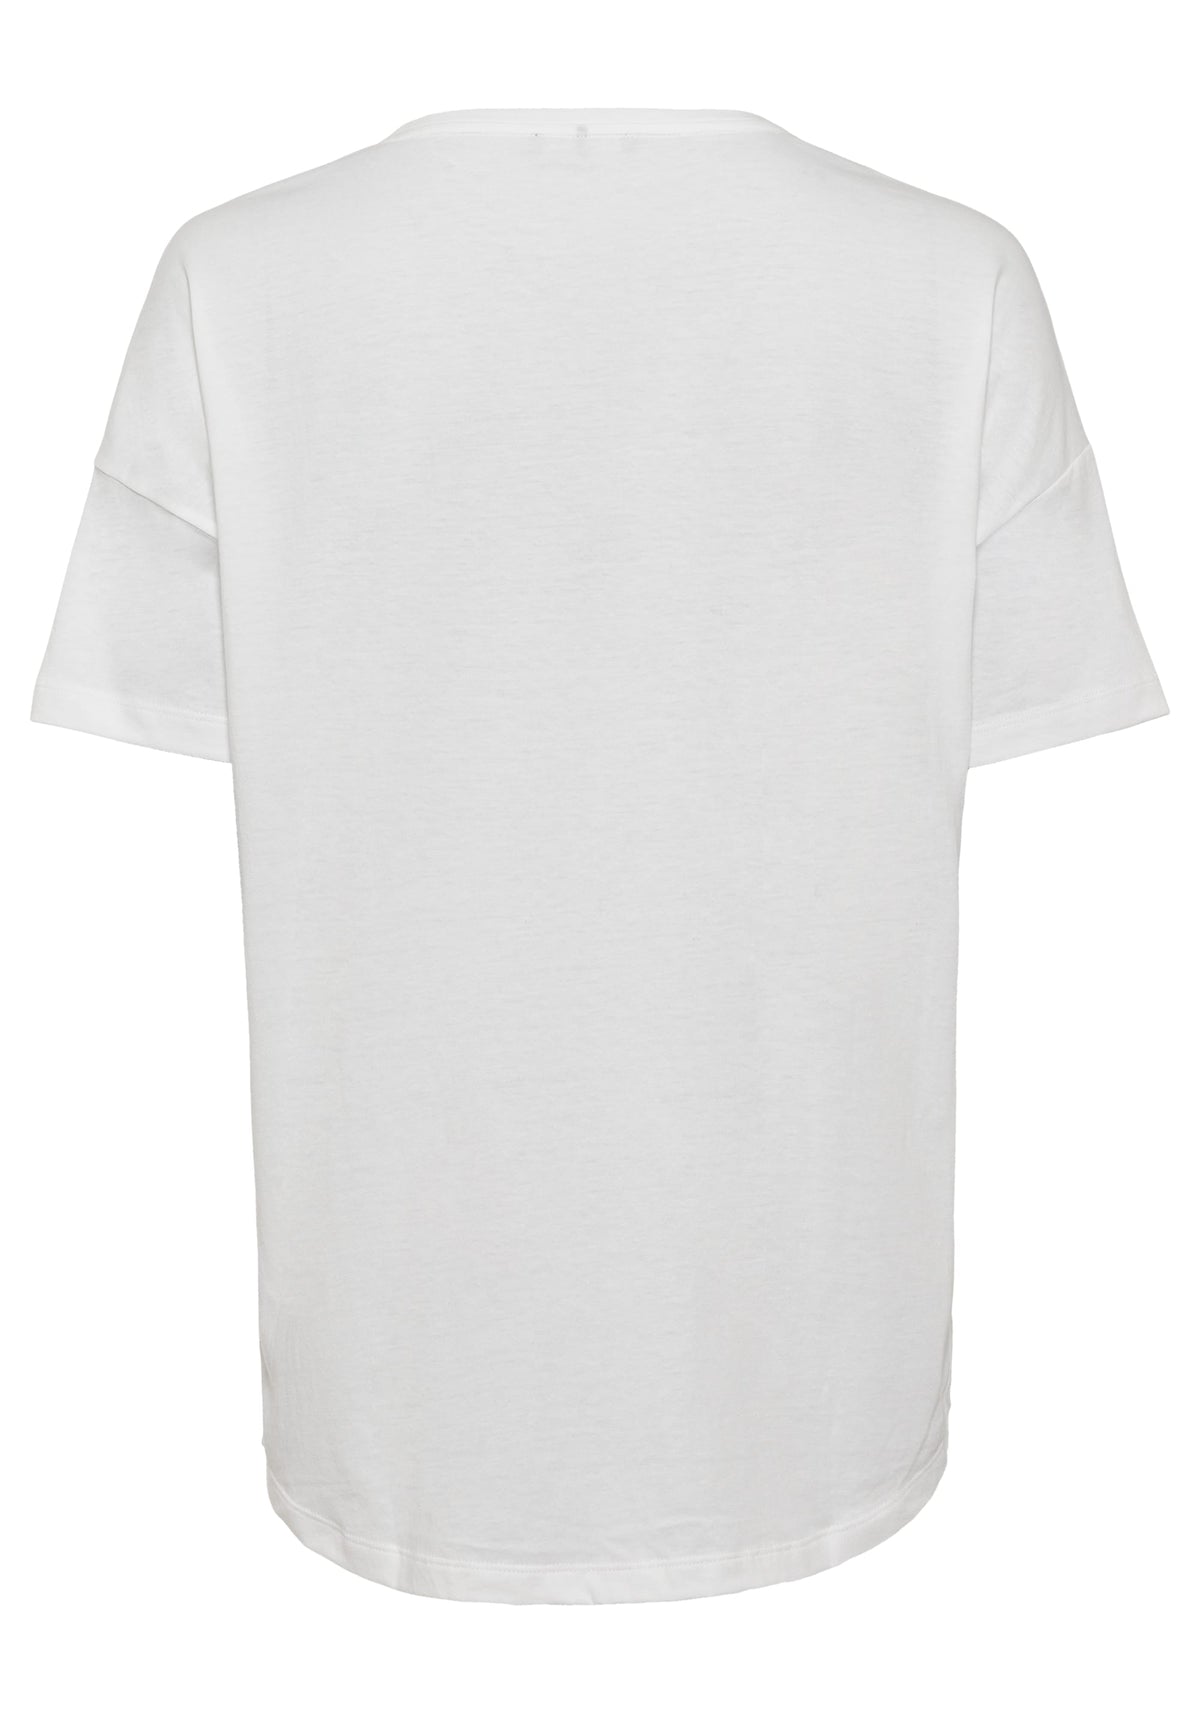 Cotton Blend Short Sleeve Embellished T-Shirt